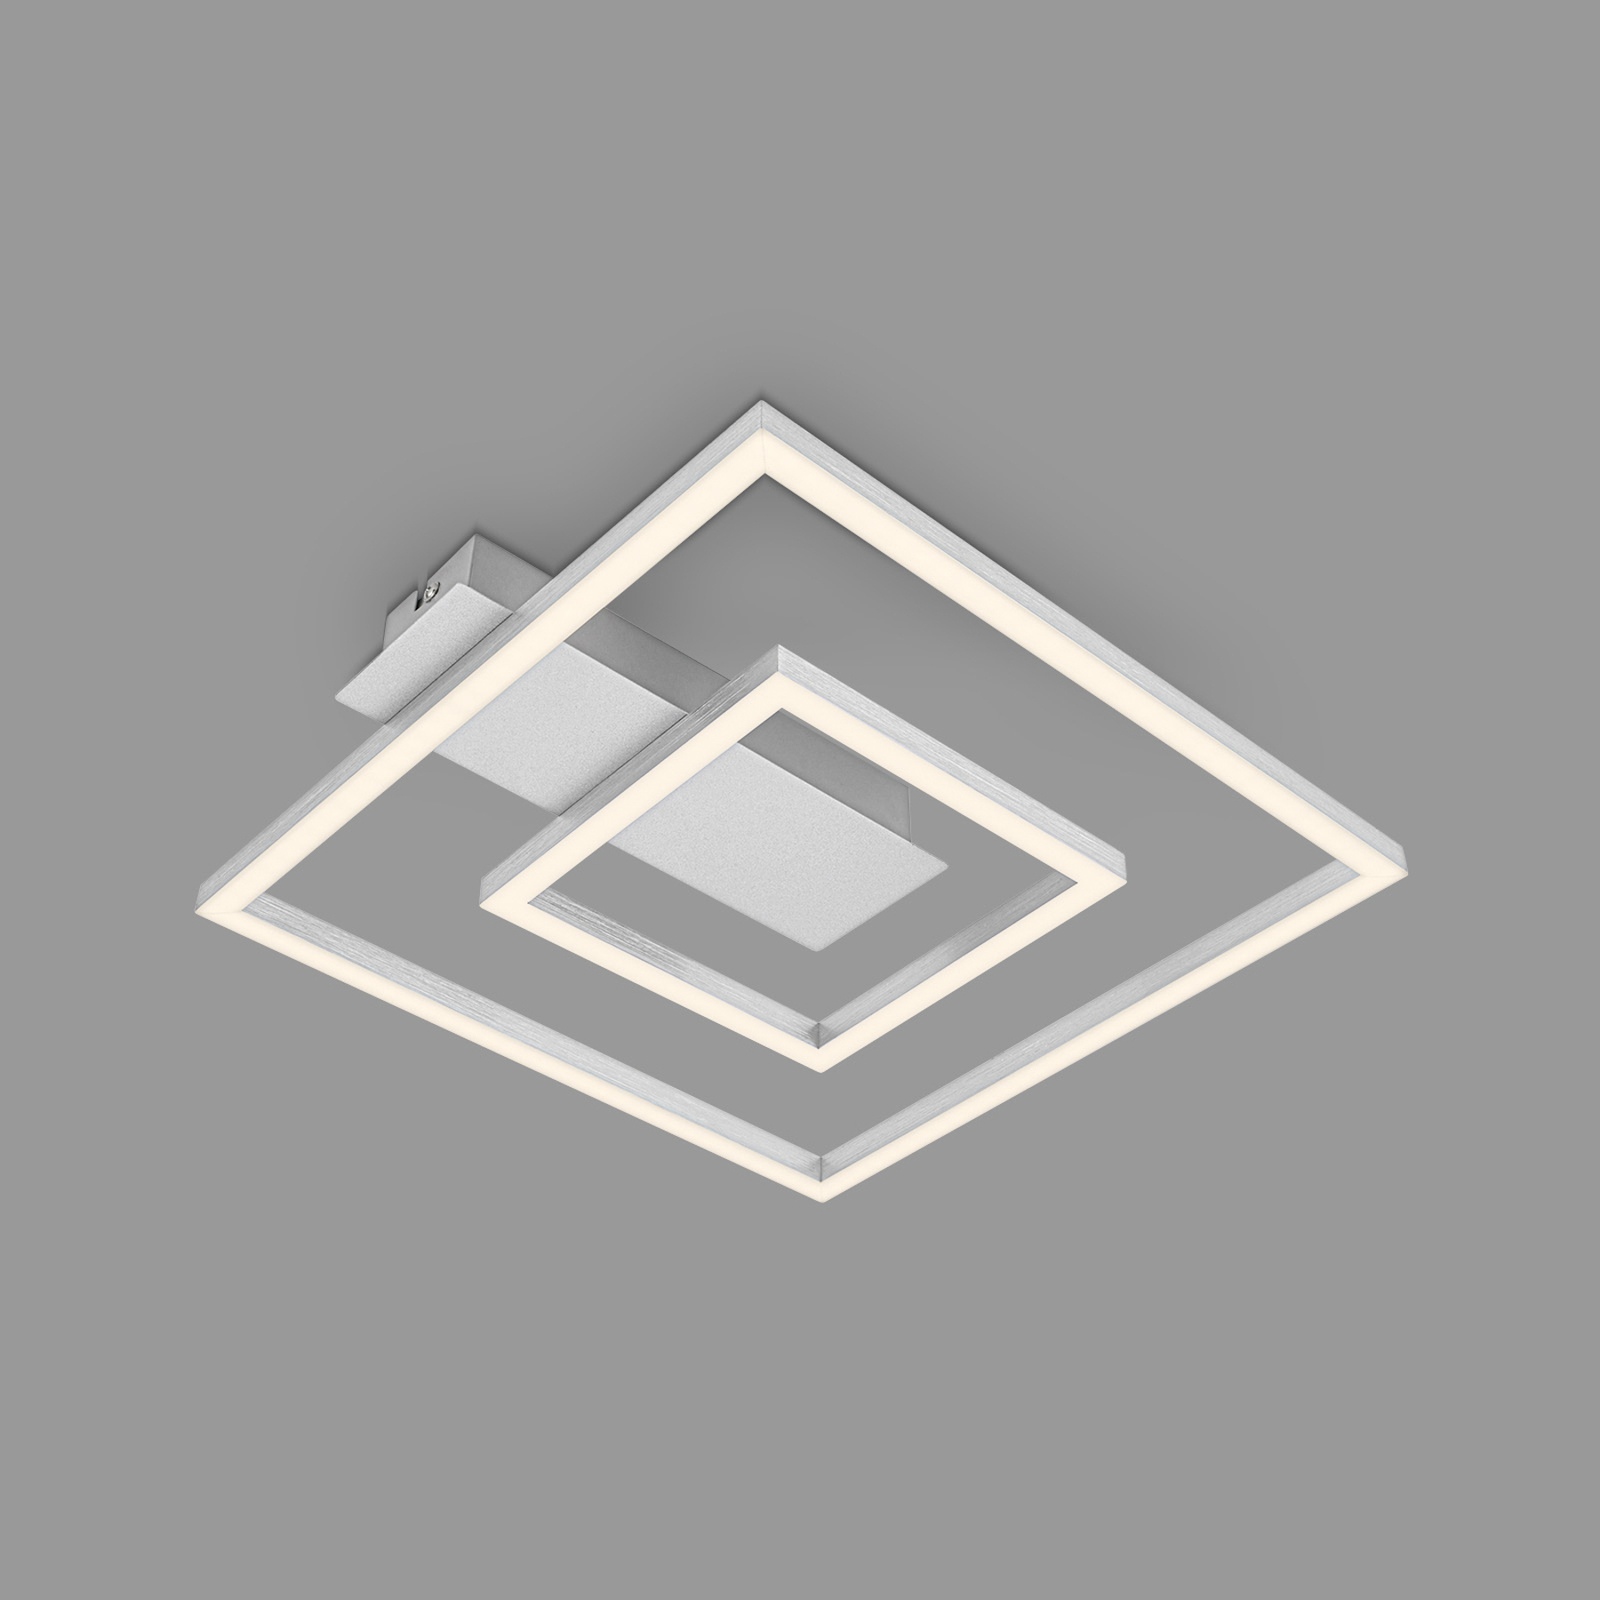 LED-Deckenleuchte 3772 mit 2 Rahmen, alu